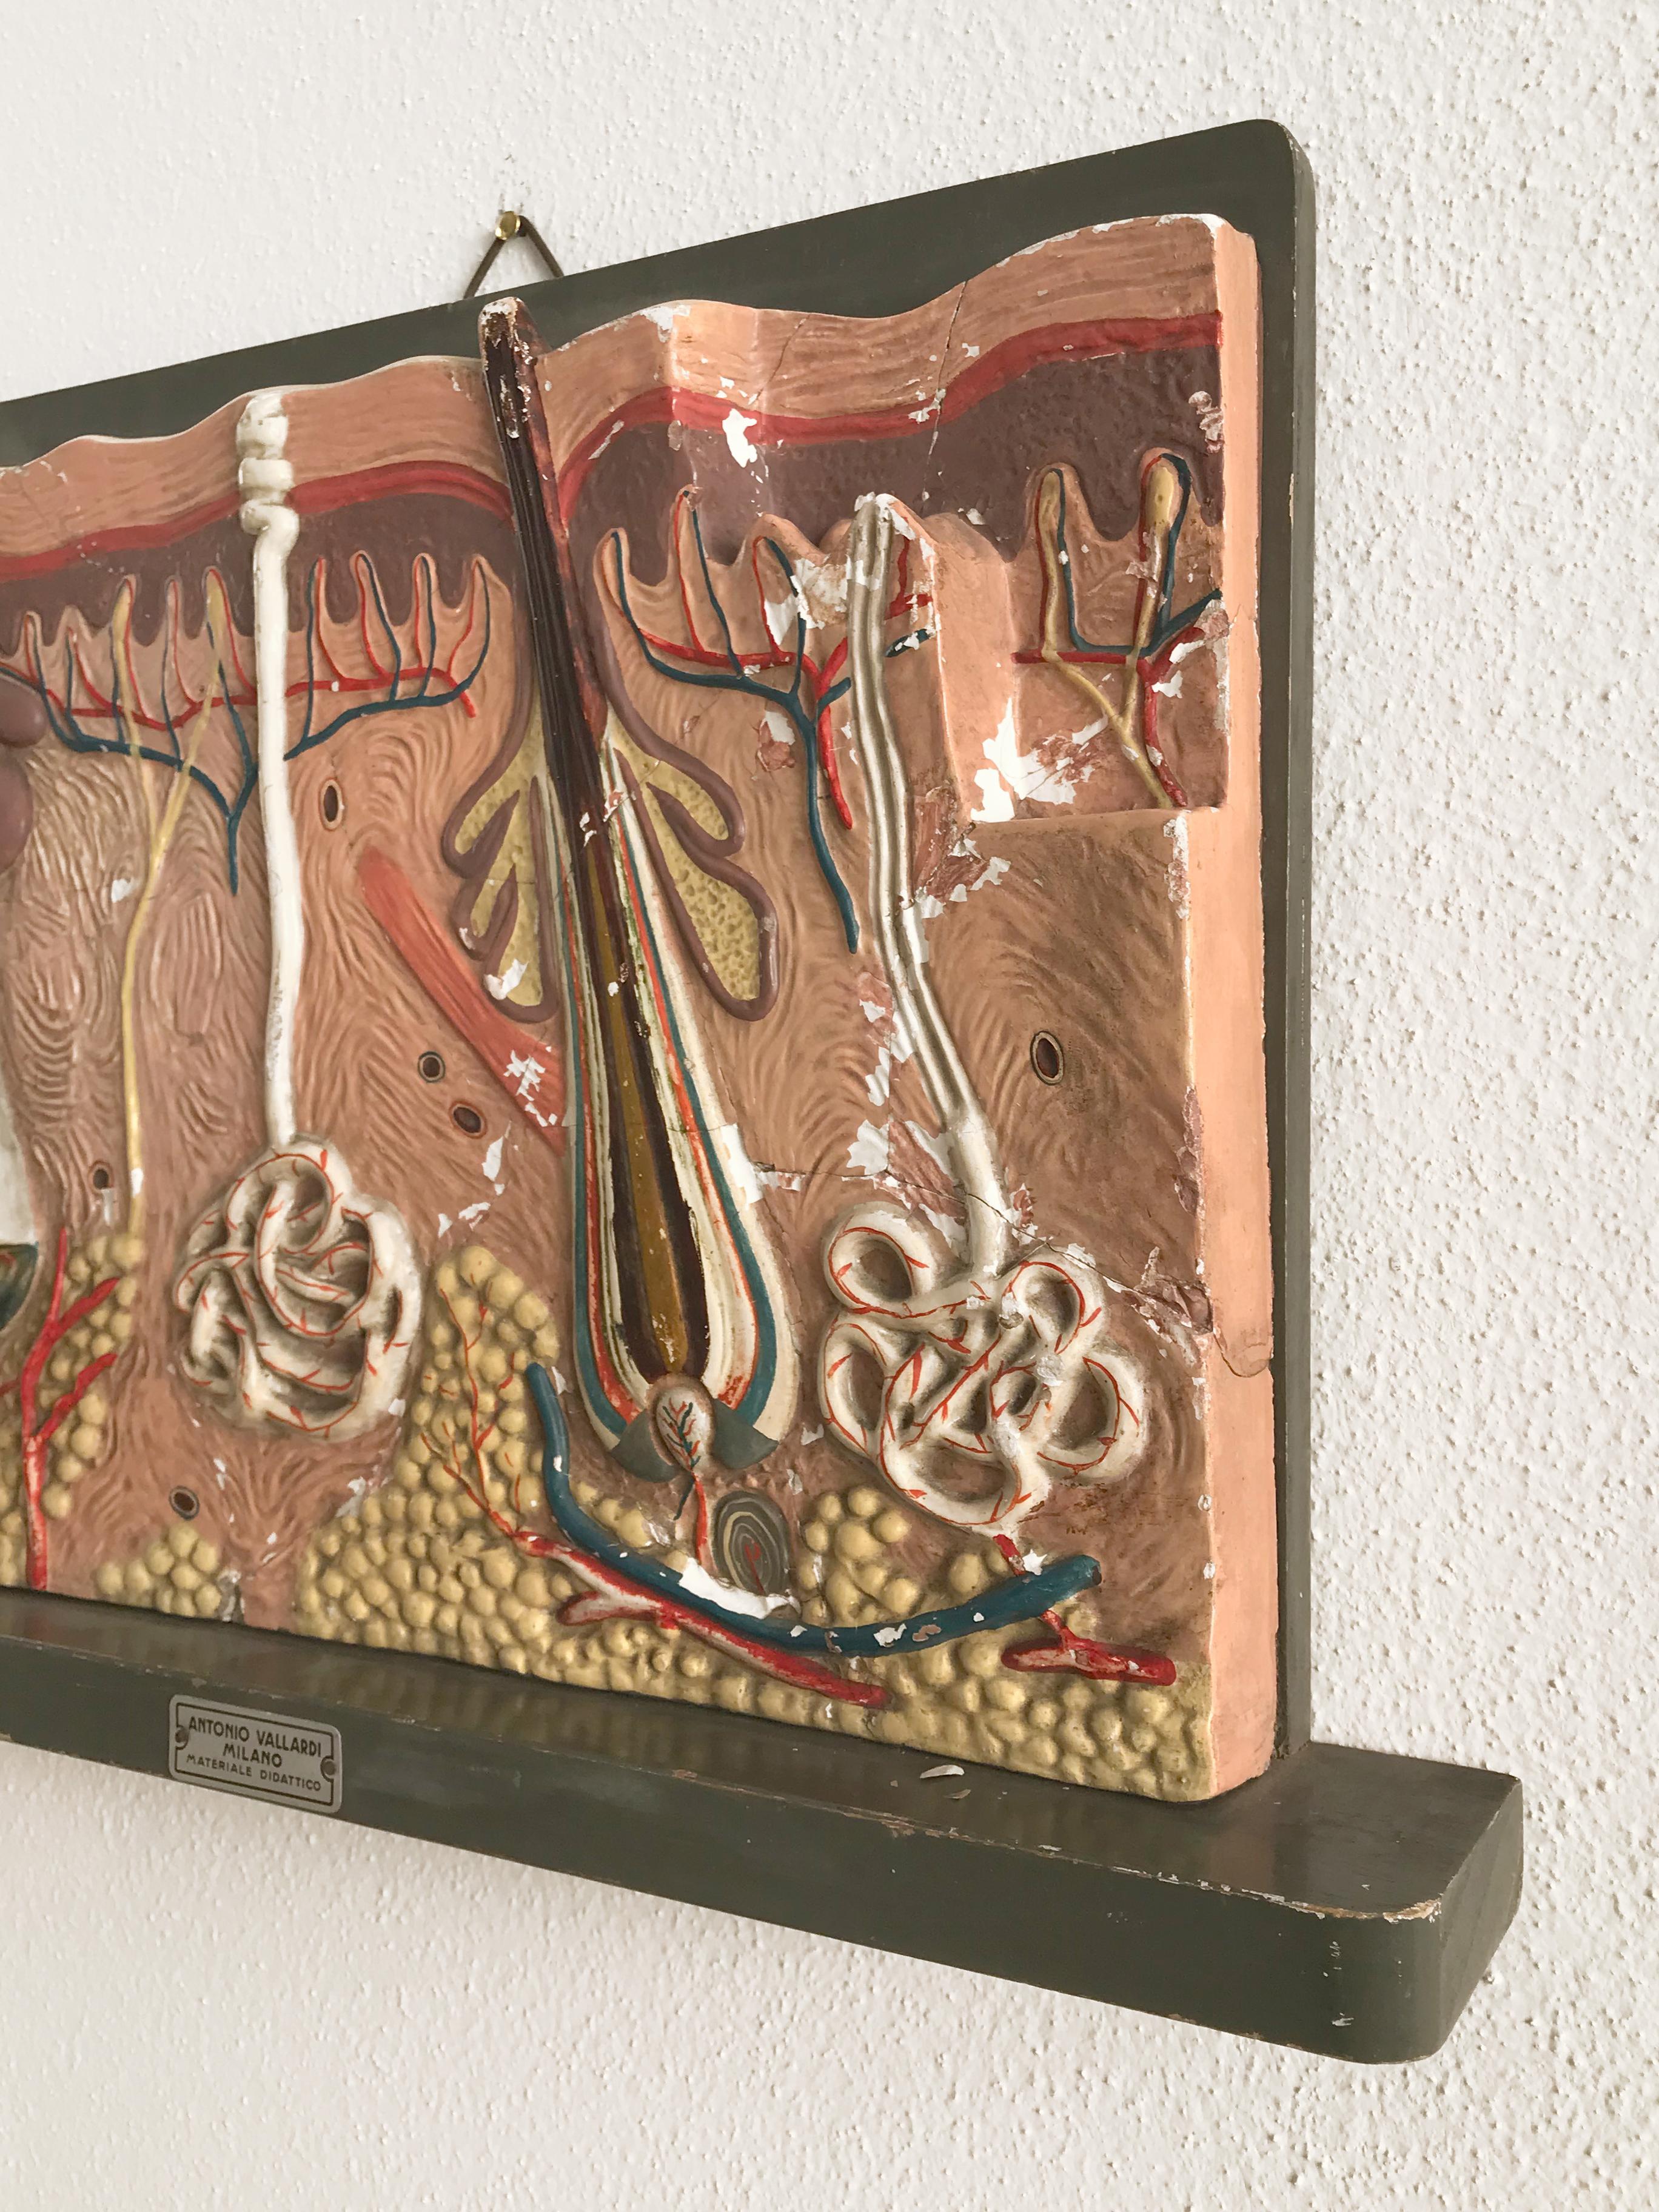 Italienische dreidimensionale didaktische anatomische Tafel aus Gips mit Antonio's Milano Label, Mitte des Jahrhunderts, Italien 1950er Jahre

Bitte beachten Sie, dass es sich bei dem Artikel um ein Original aus der damaligen Zeit handelt, das